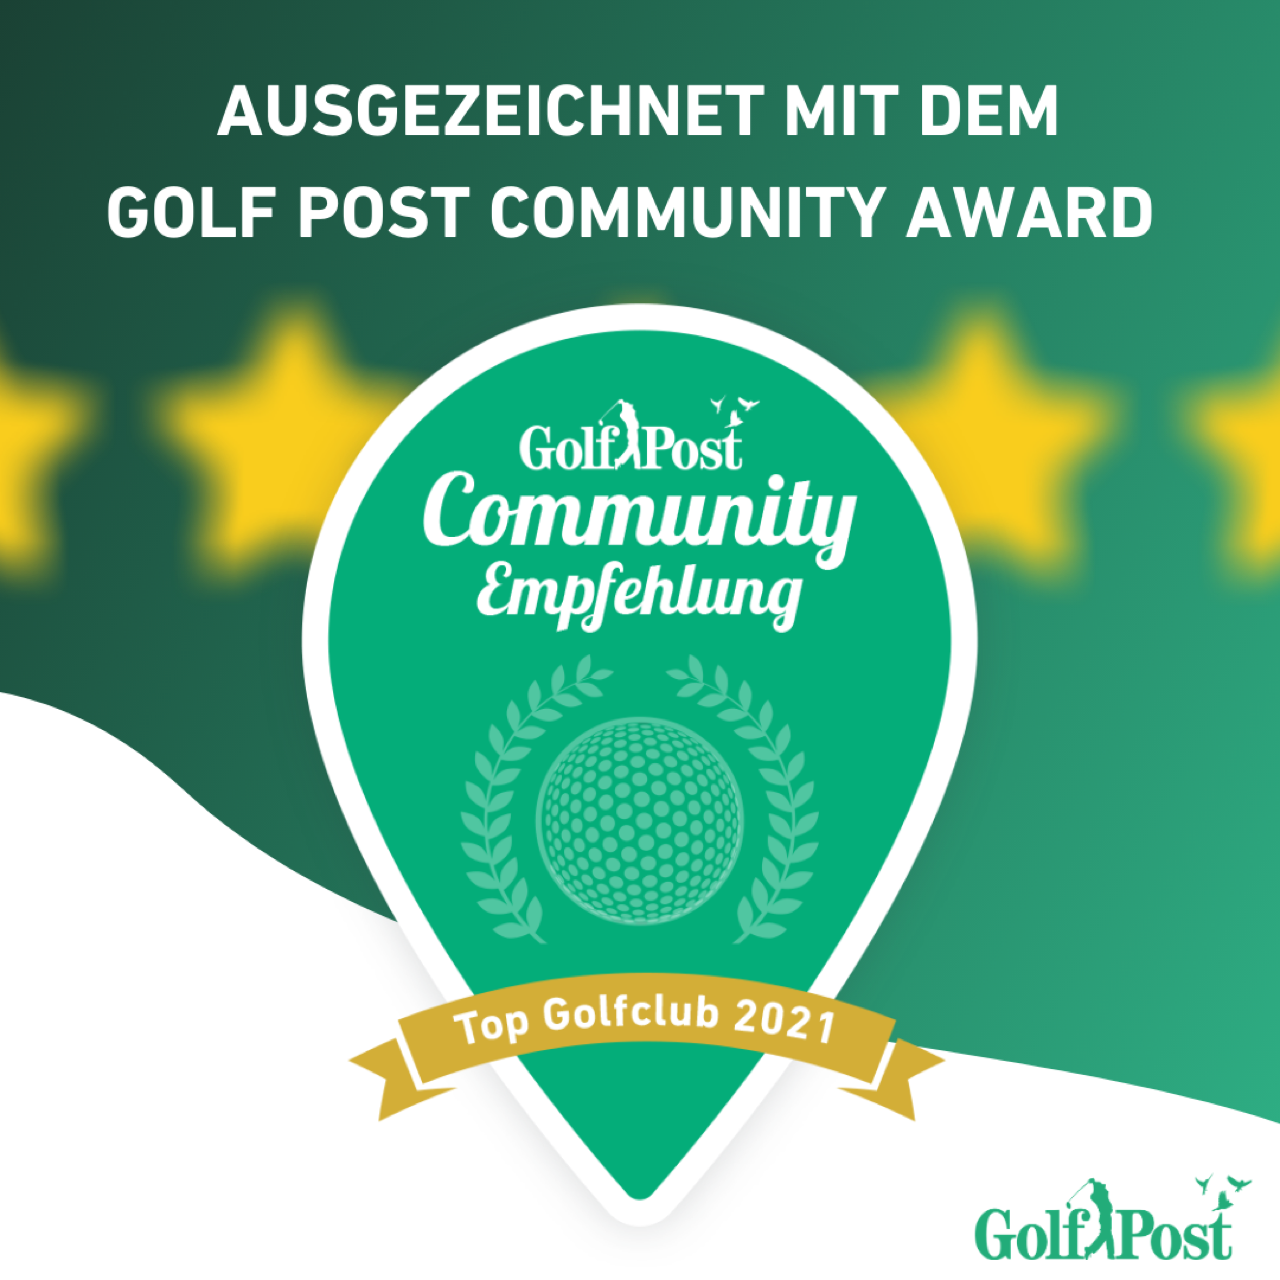 2021 Top Club Golf Post Community Award 38 von über 700 größer 45 von 5 Sternen